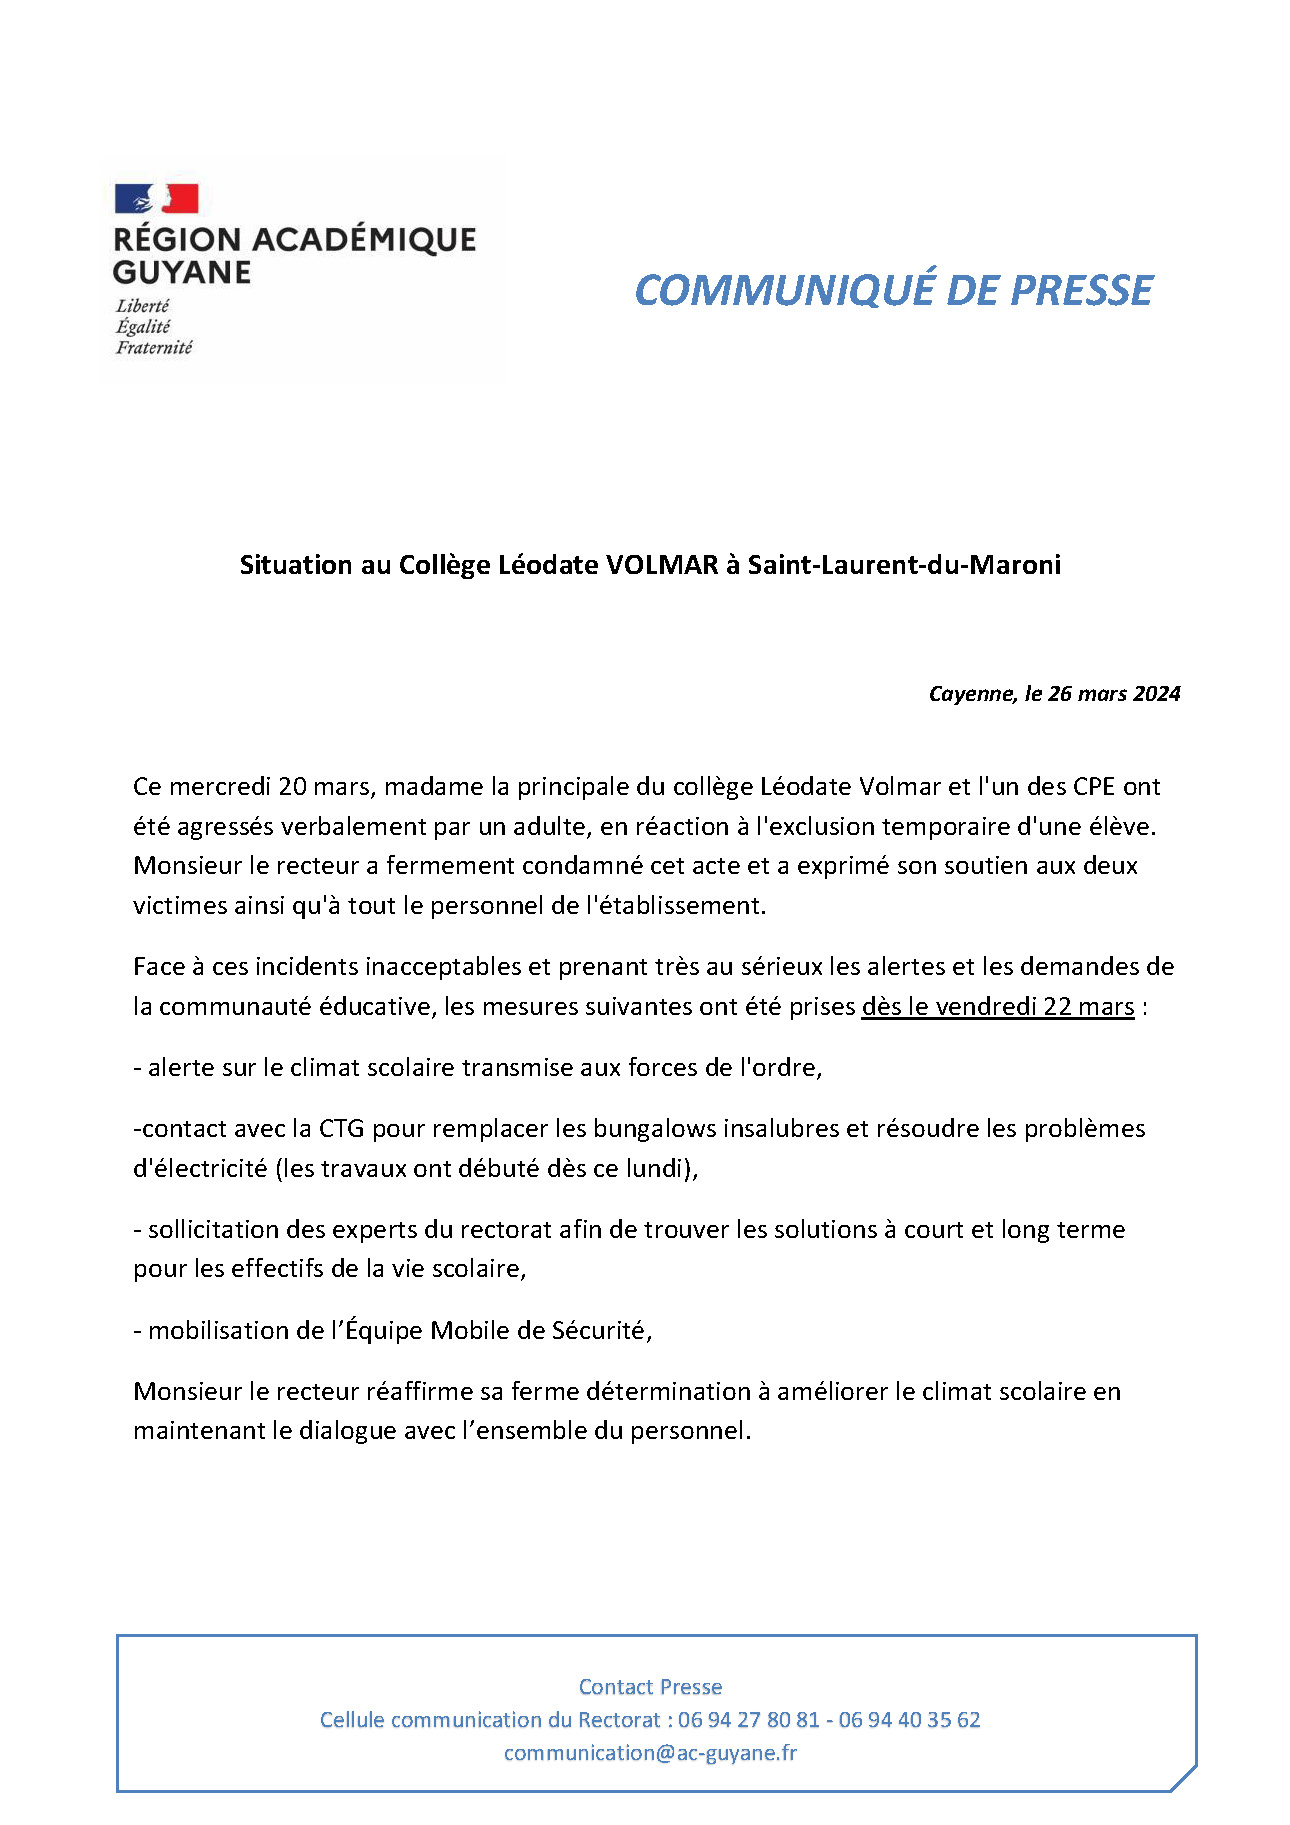 Situation au Collège Léodate VOLMAR à Saint-Laurent-du-Maroni